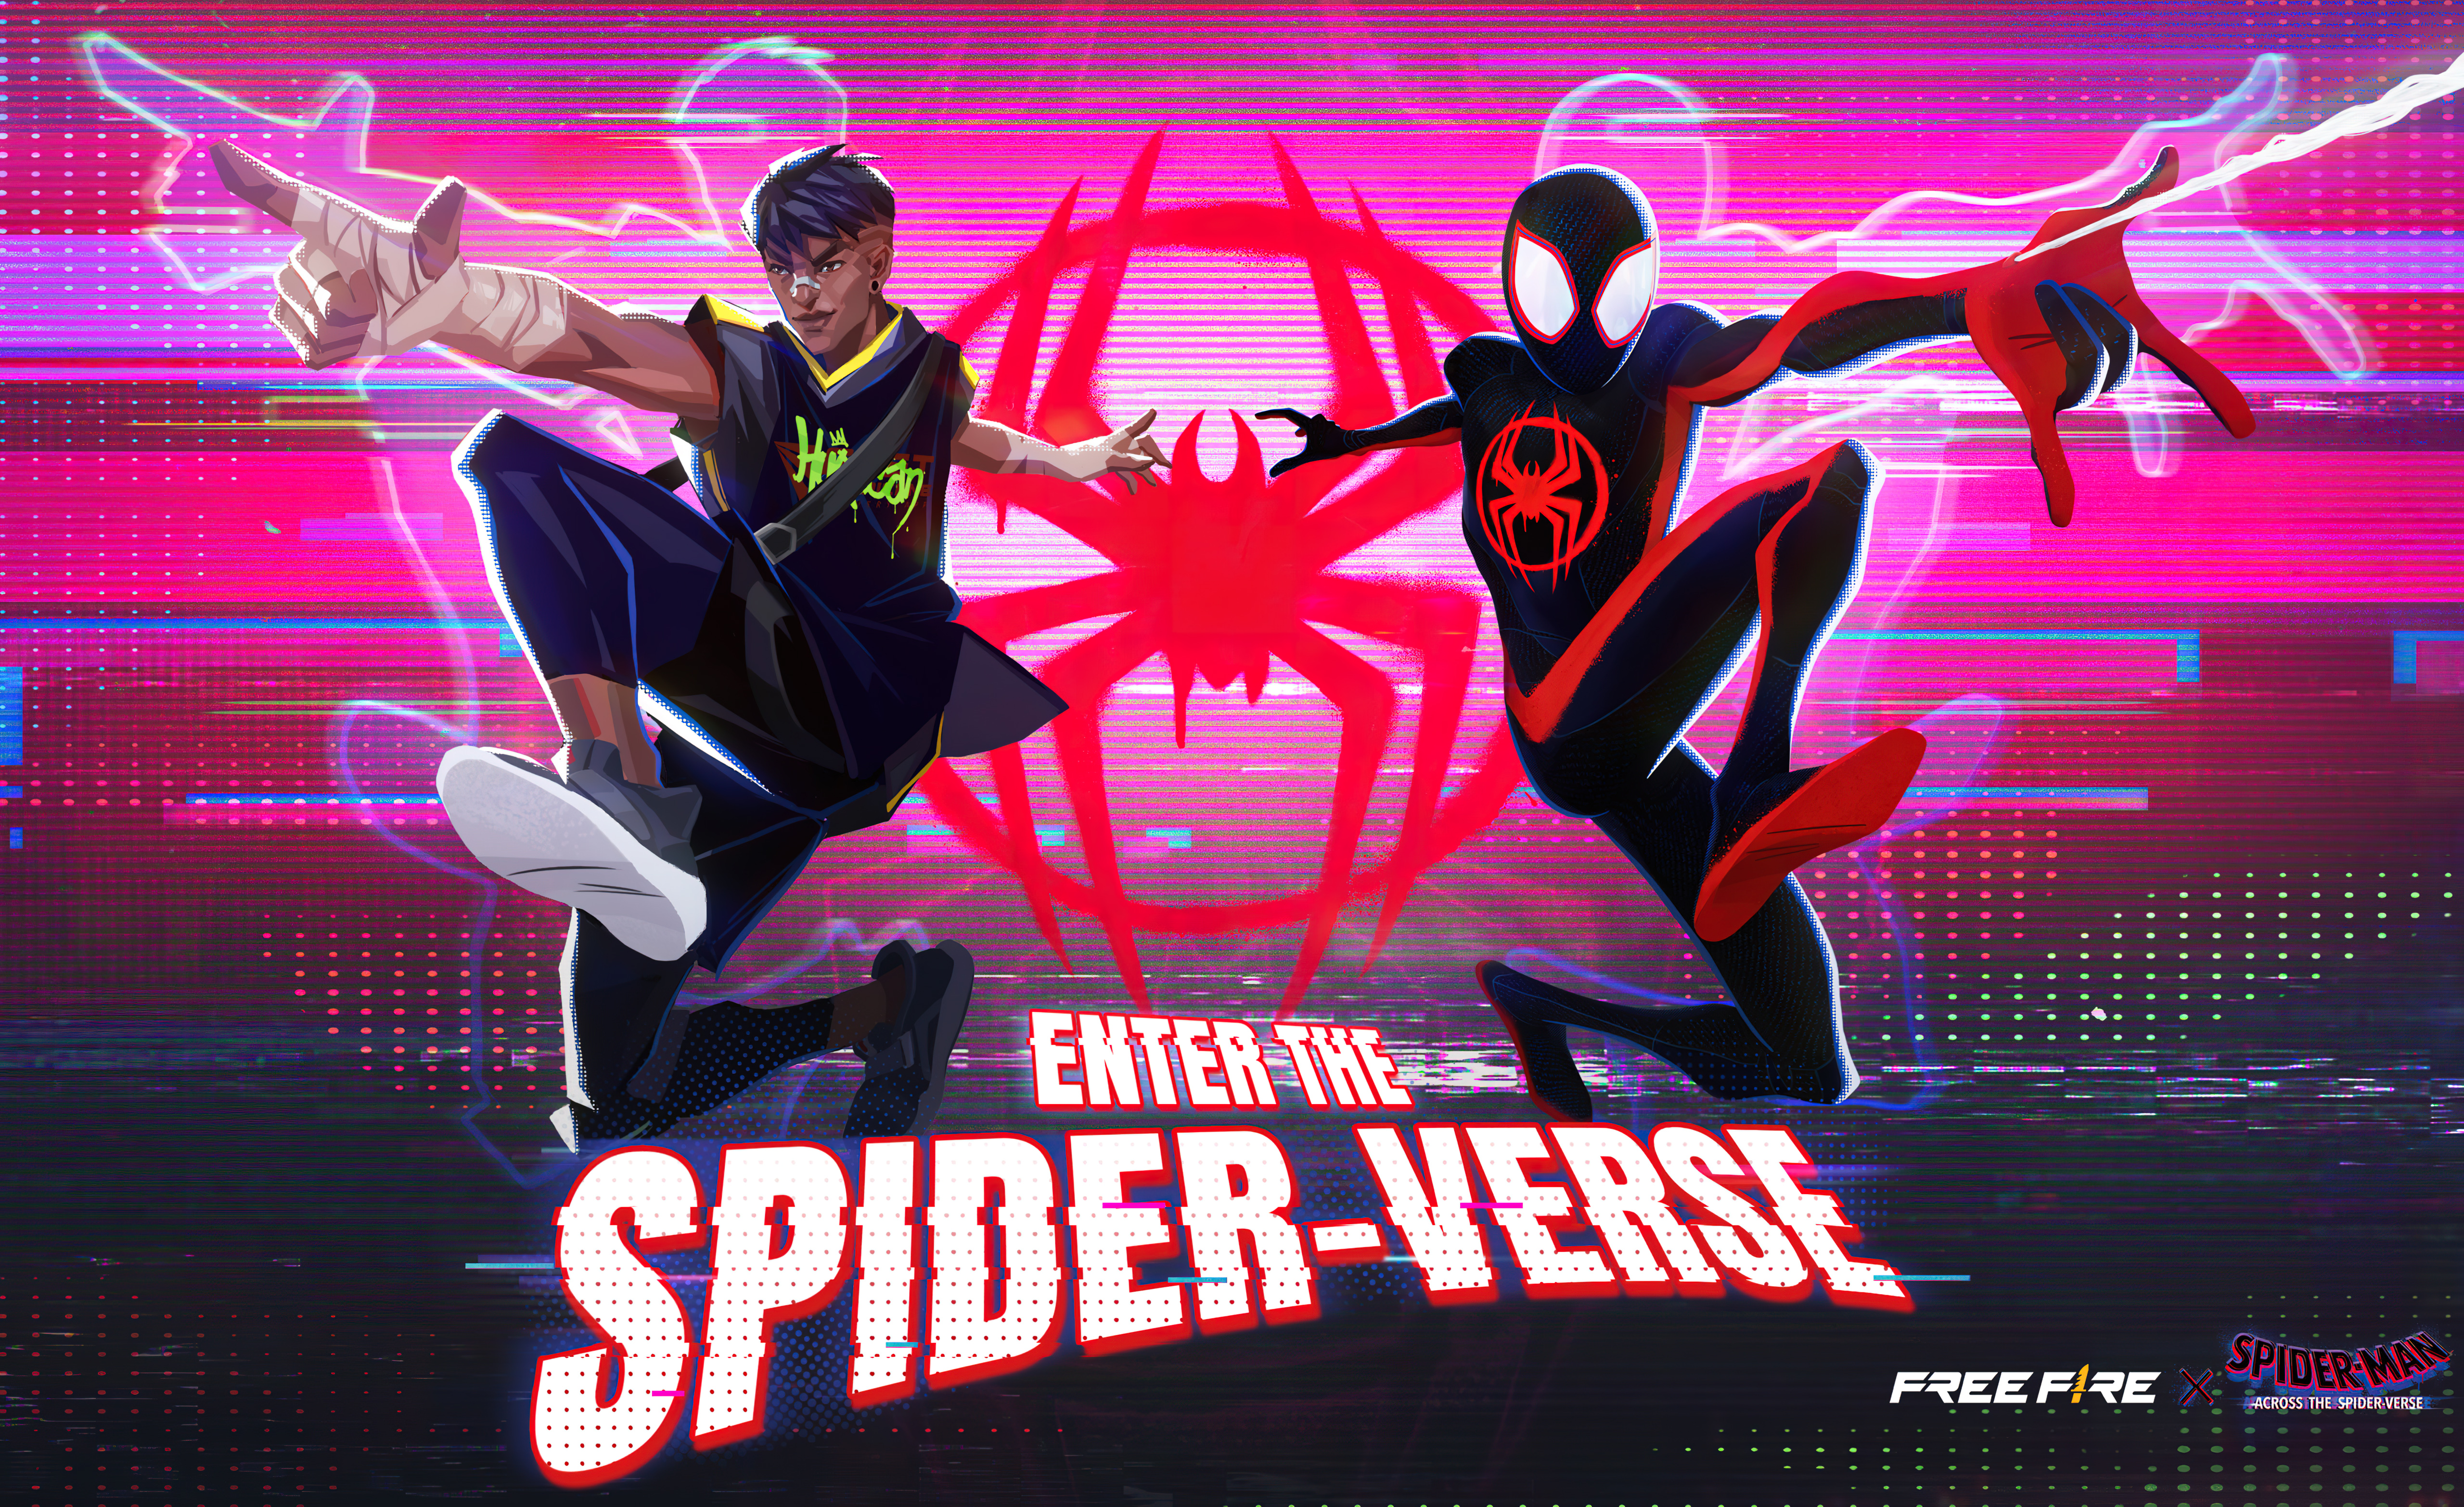 Spider-Man: Across the Spider-Verse Wallpaper 4K, Cover Art, 5K, 8K